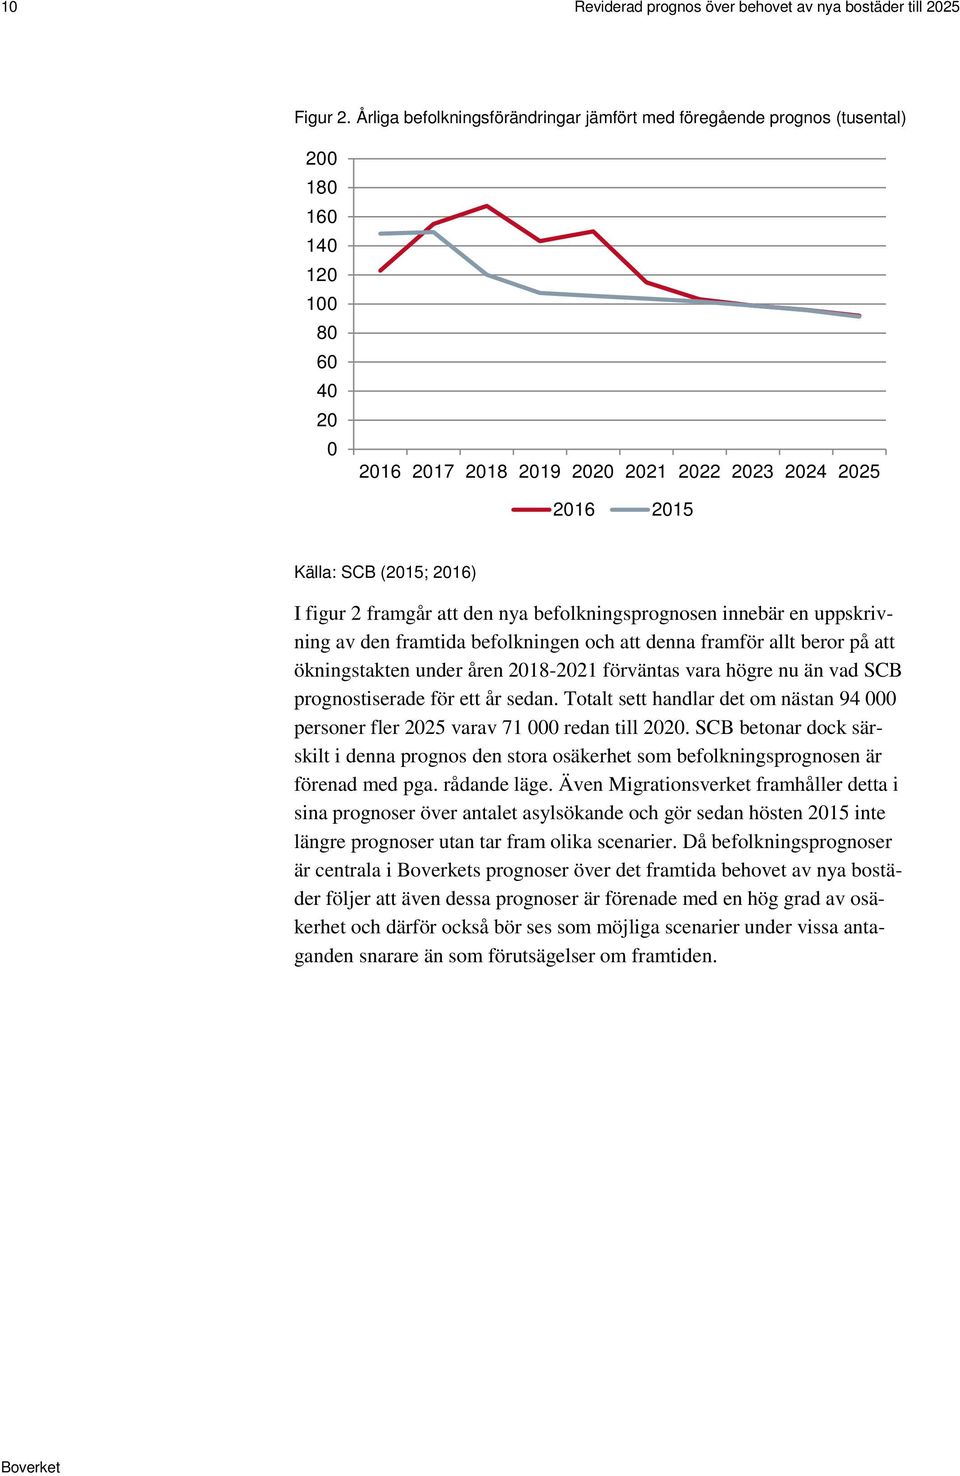 figur 2 framgår att den nya befolkningsprognosen innebär en uppskrivning av den framtida befolkningen och att denna framför allt beror på att ökningstakten under åren 2018-2021 förväntas vara högre